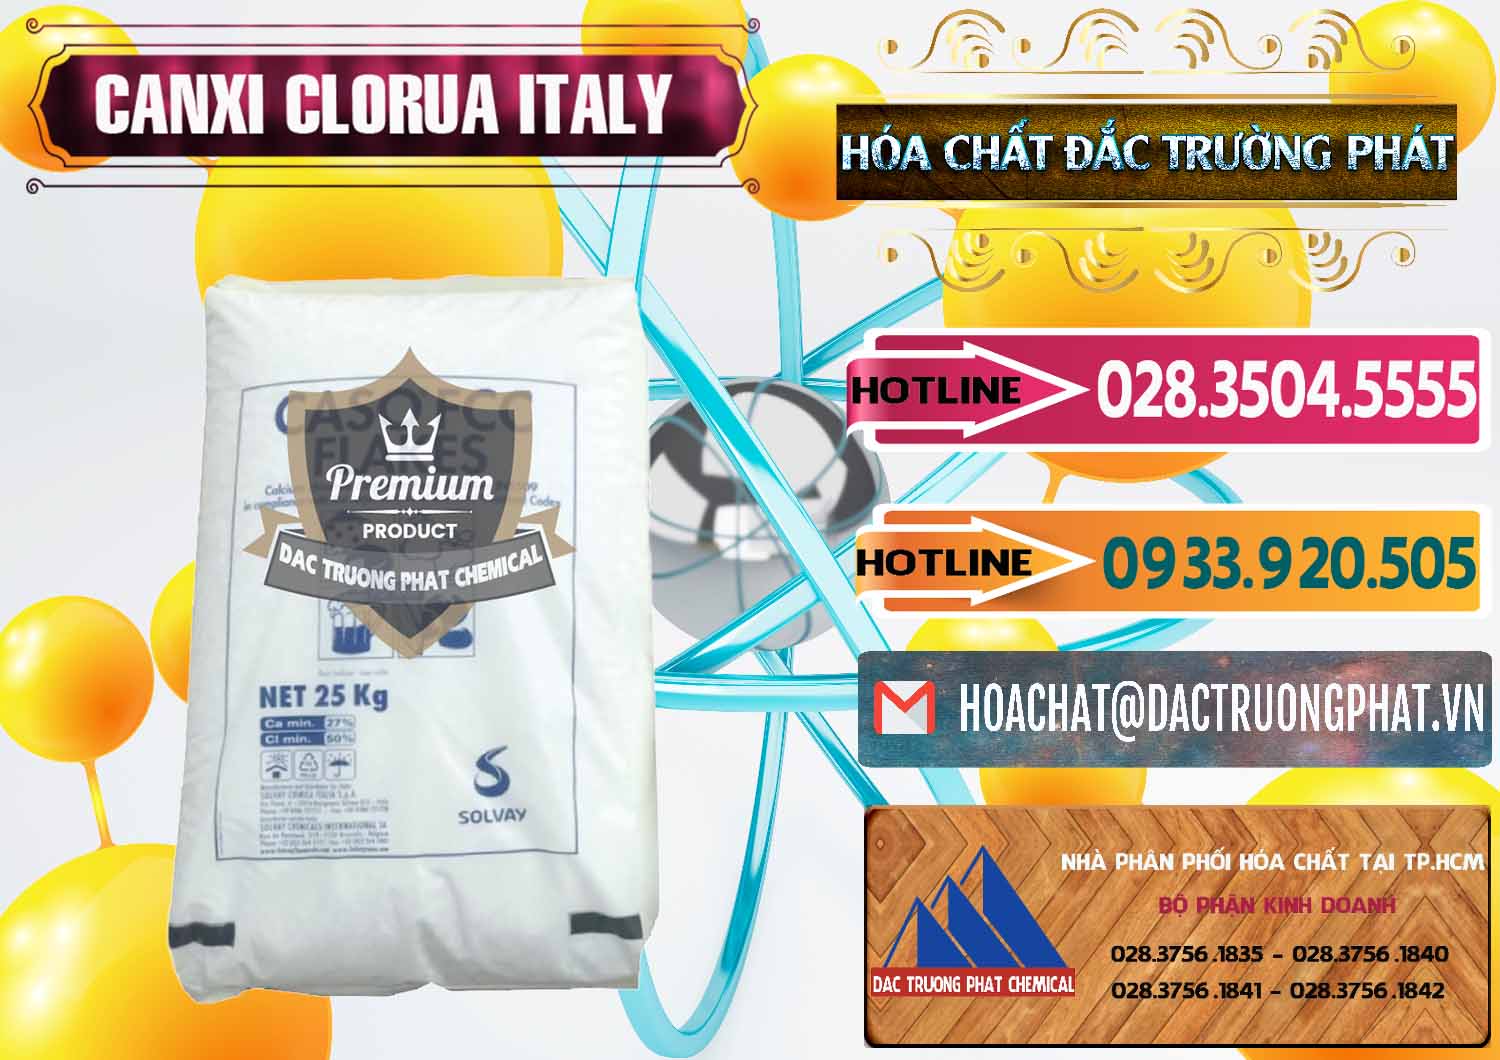 Đơn vị chuyên cung ứng & bán CaCl2 – Canxi Clorua Food Grade Ý Italy - 0435 - Cty cung cấp & phân phối hóa chất tại TP.HCM - dactruongphat.vn